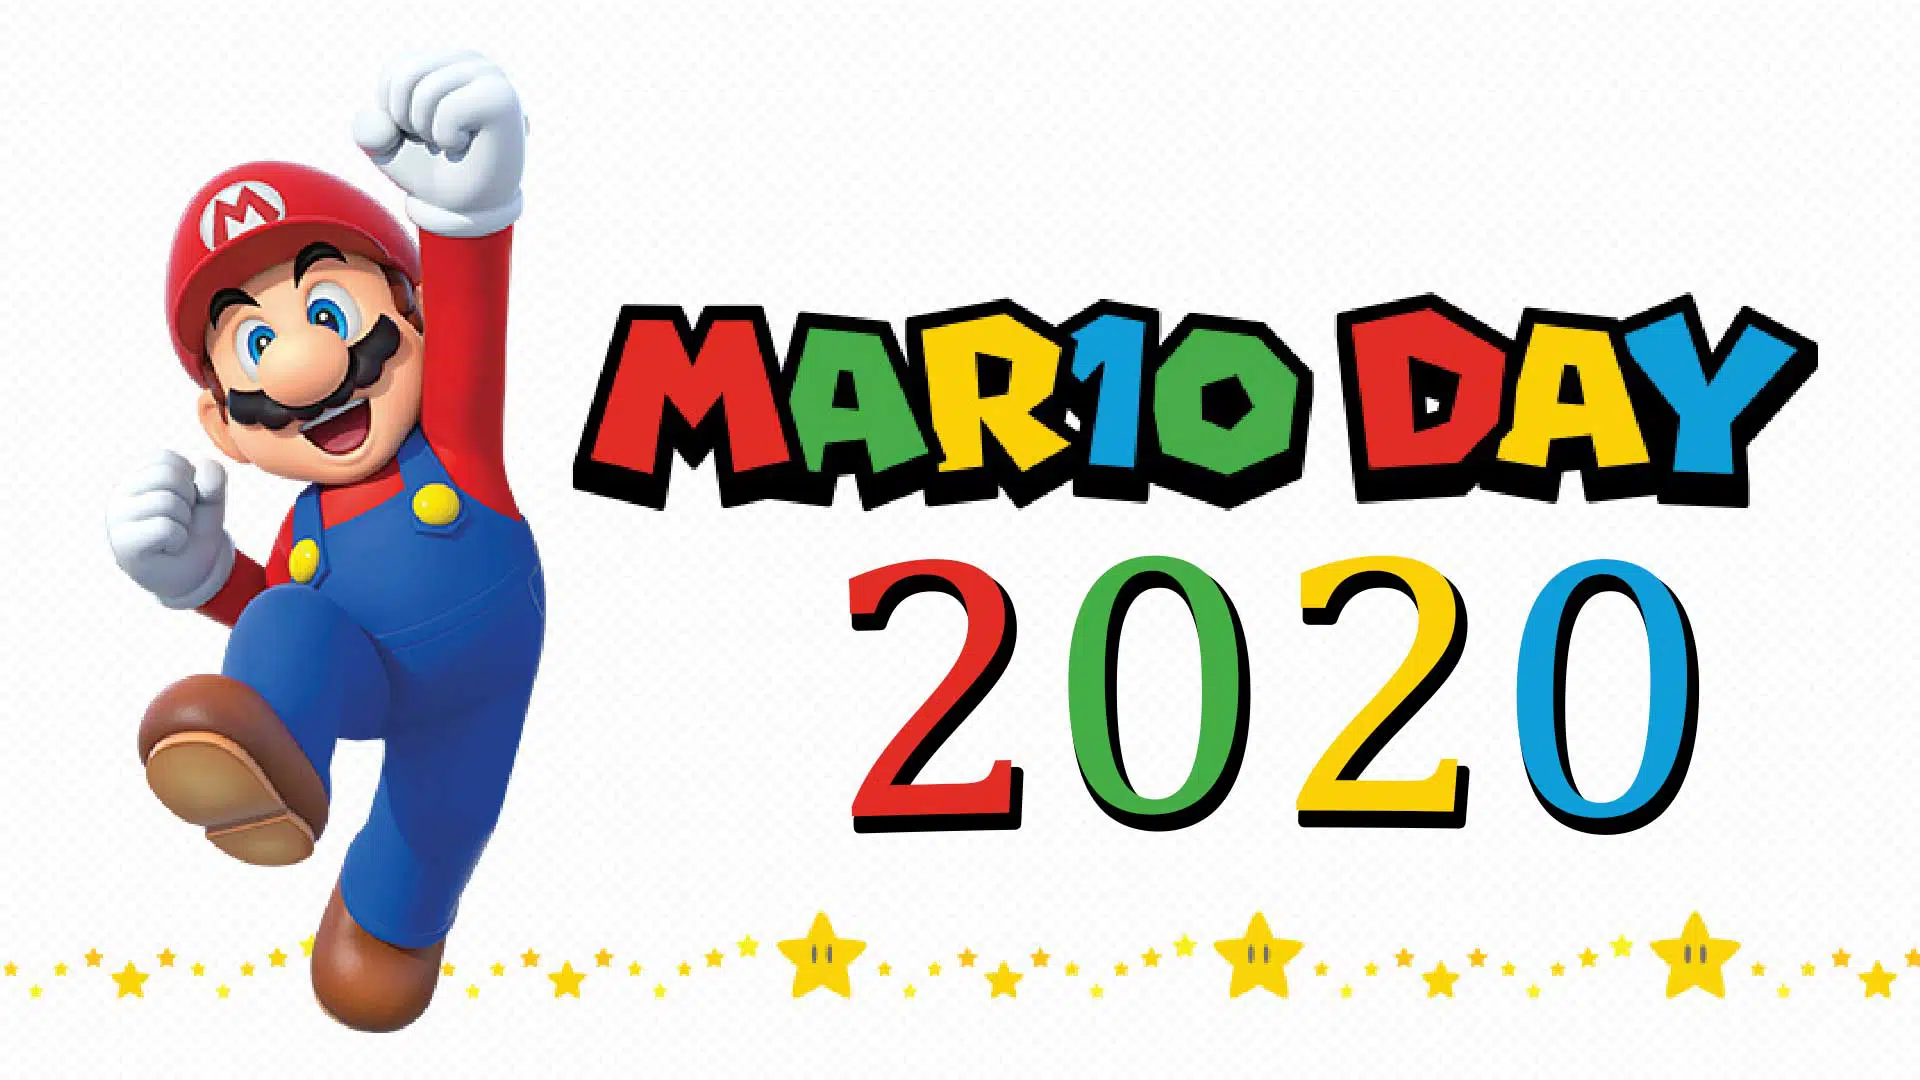 mariotag mar10 day mario day 2020